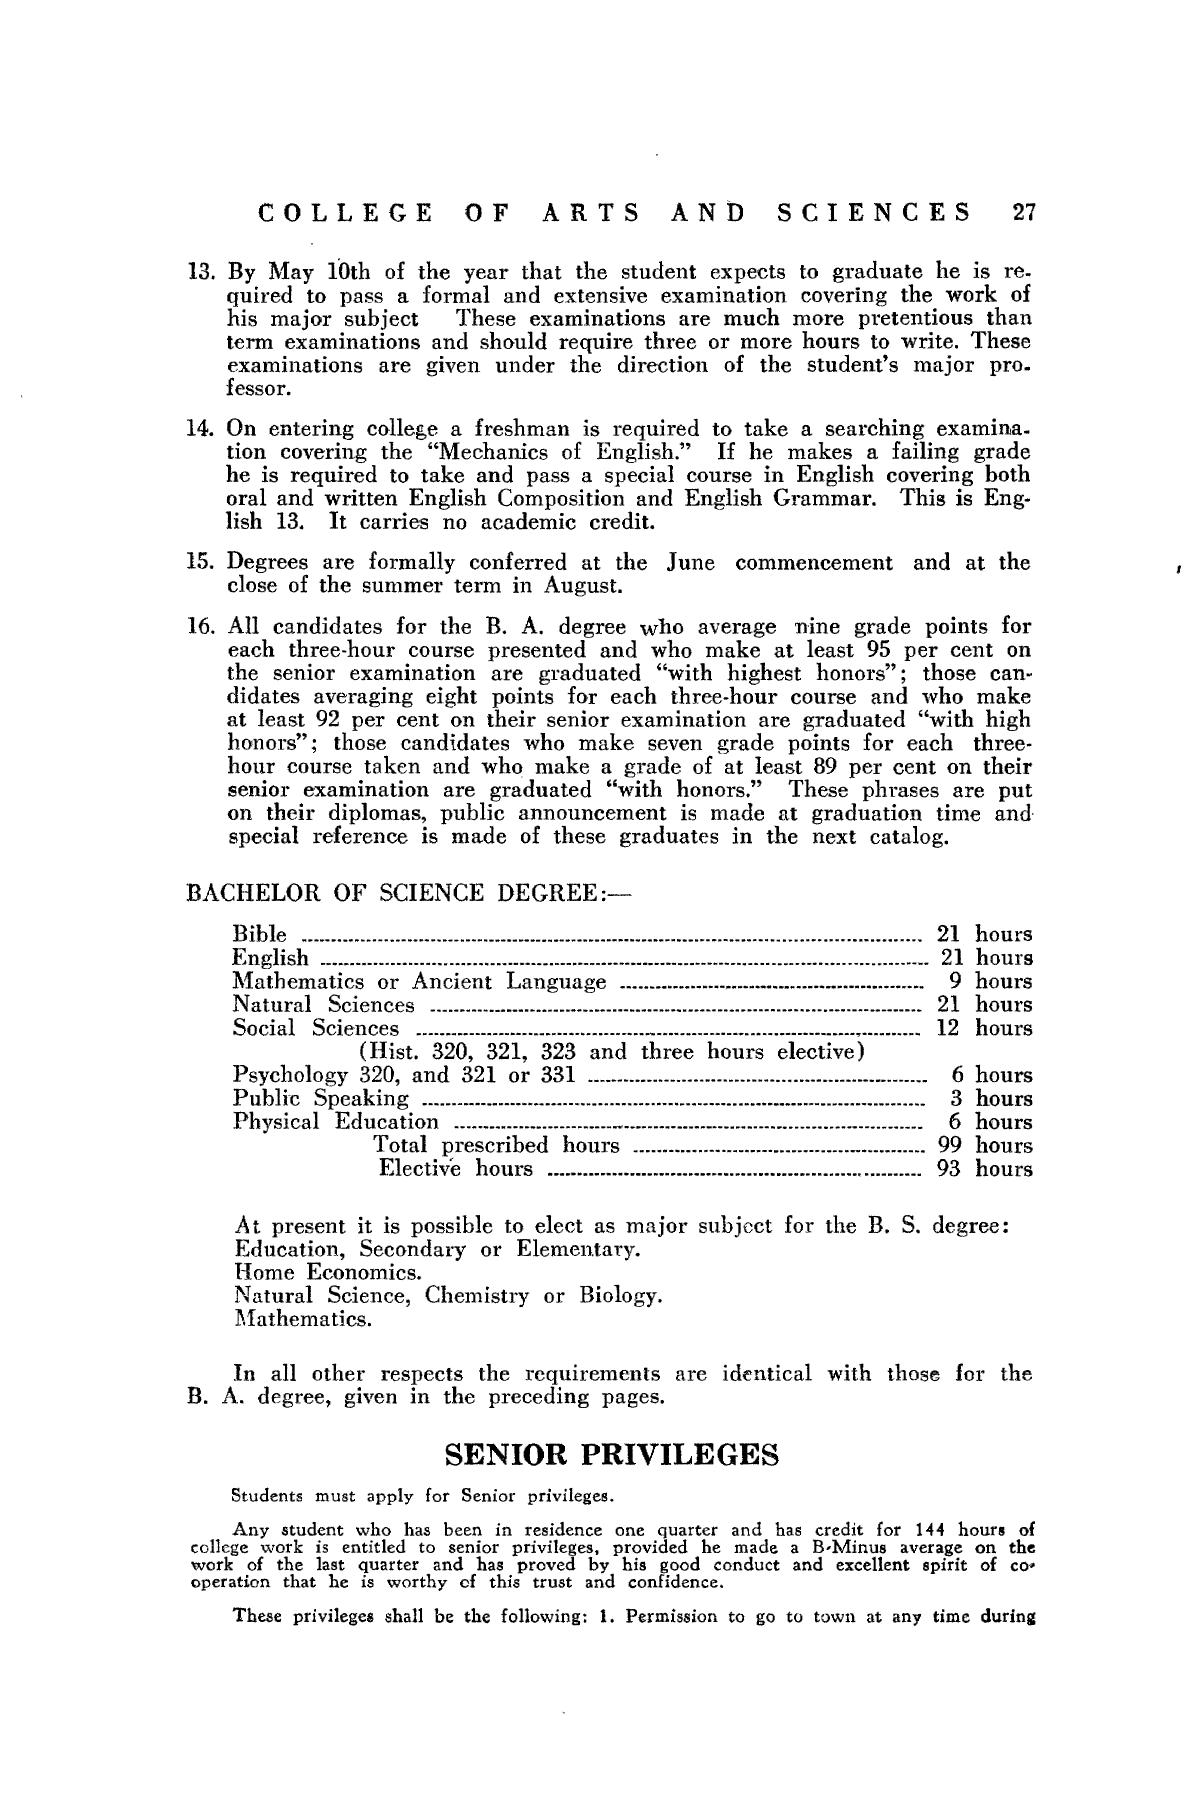 Catalog of Abilene Christian College, 1932-1933
                                                
                                                    27
                                                